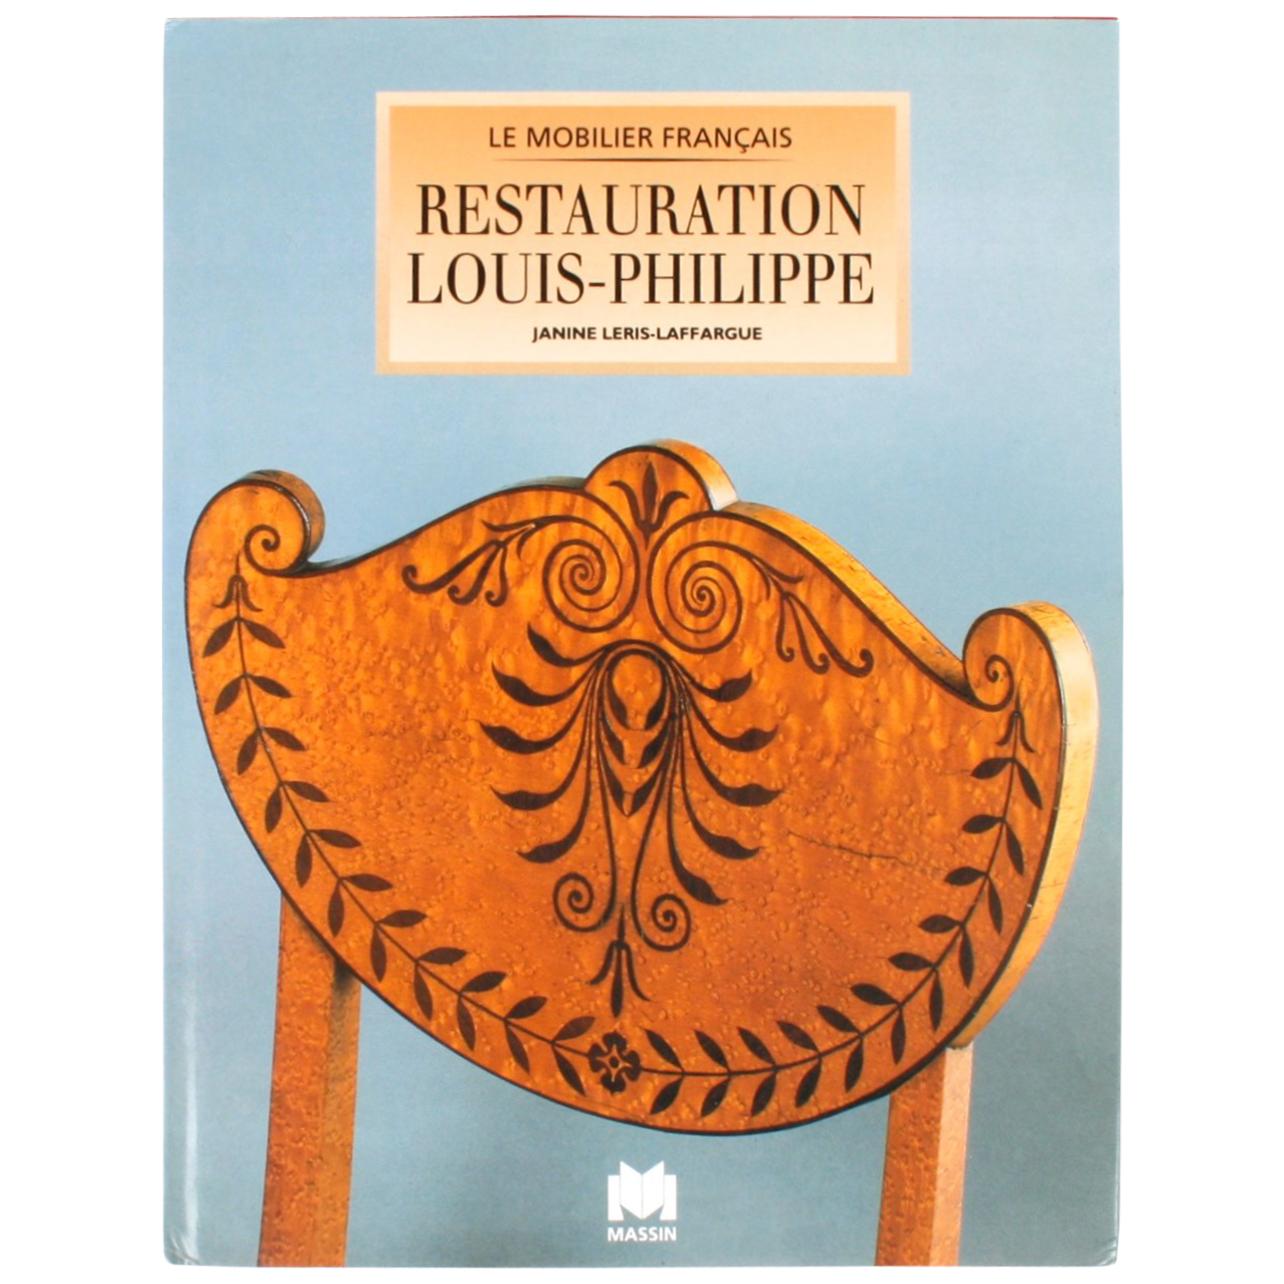 Restauration, Louis-Philippe by Janine Leris-Laffargue, 1st Edition